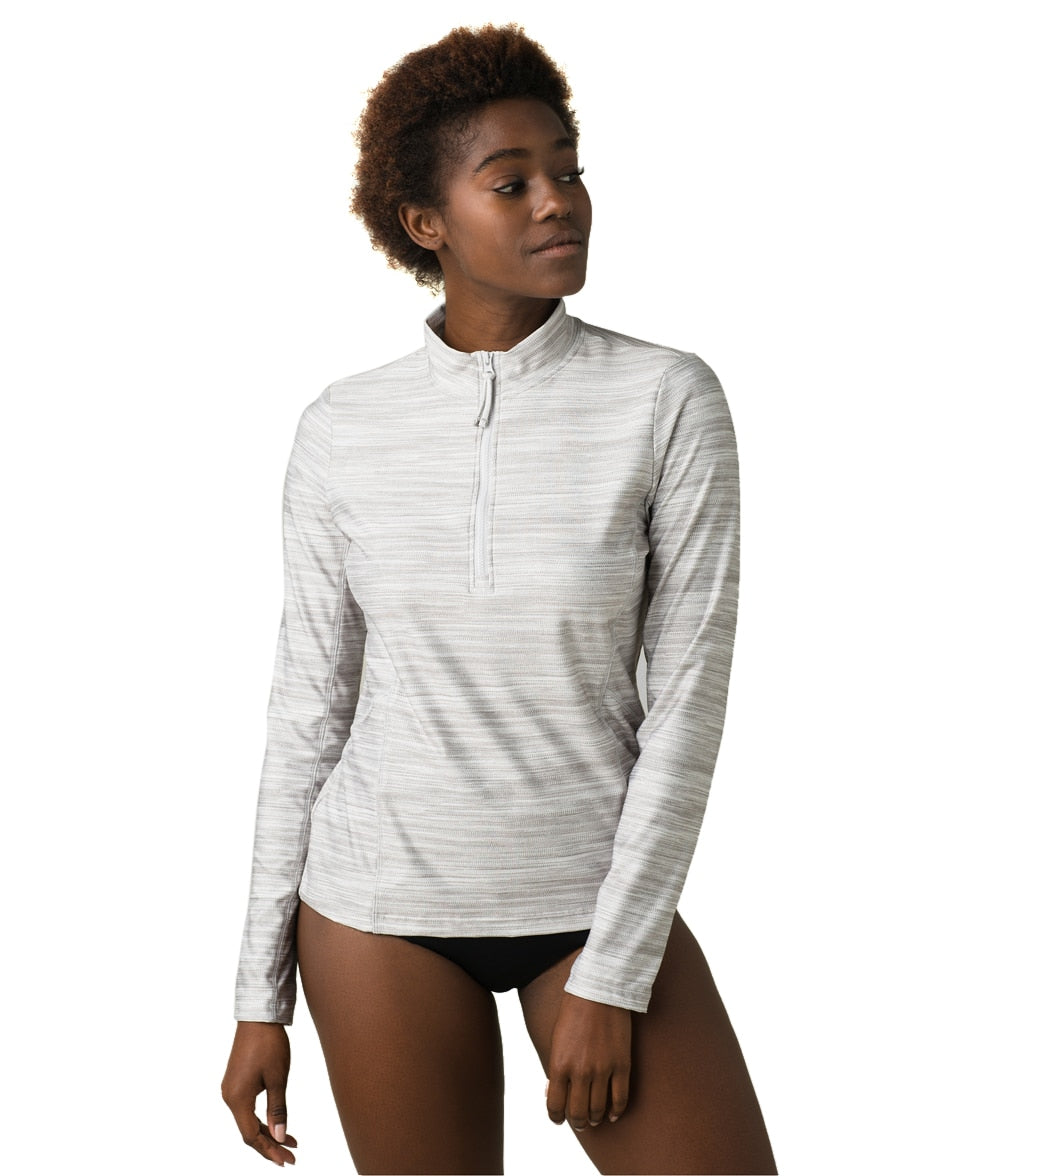 Prana Catarina Zip Long Sleeve Cover Up Sun Top - Silver Spray Medium Cotton/Polyester - Swimoutlet.com